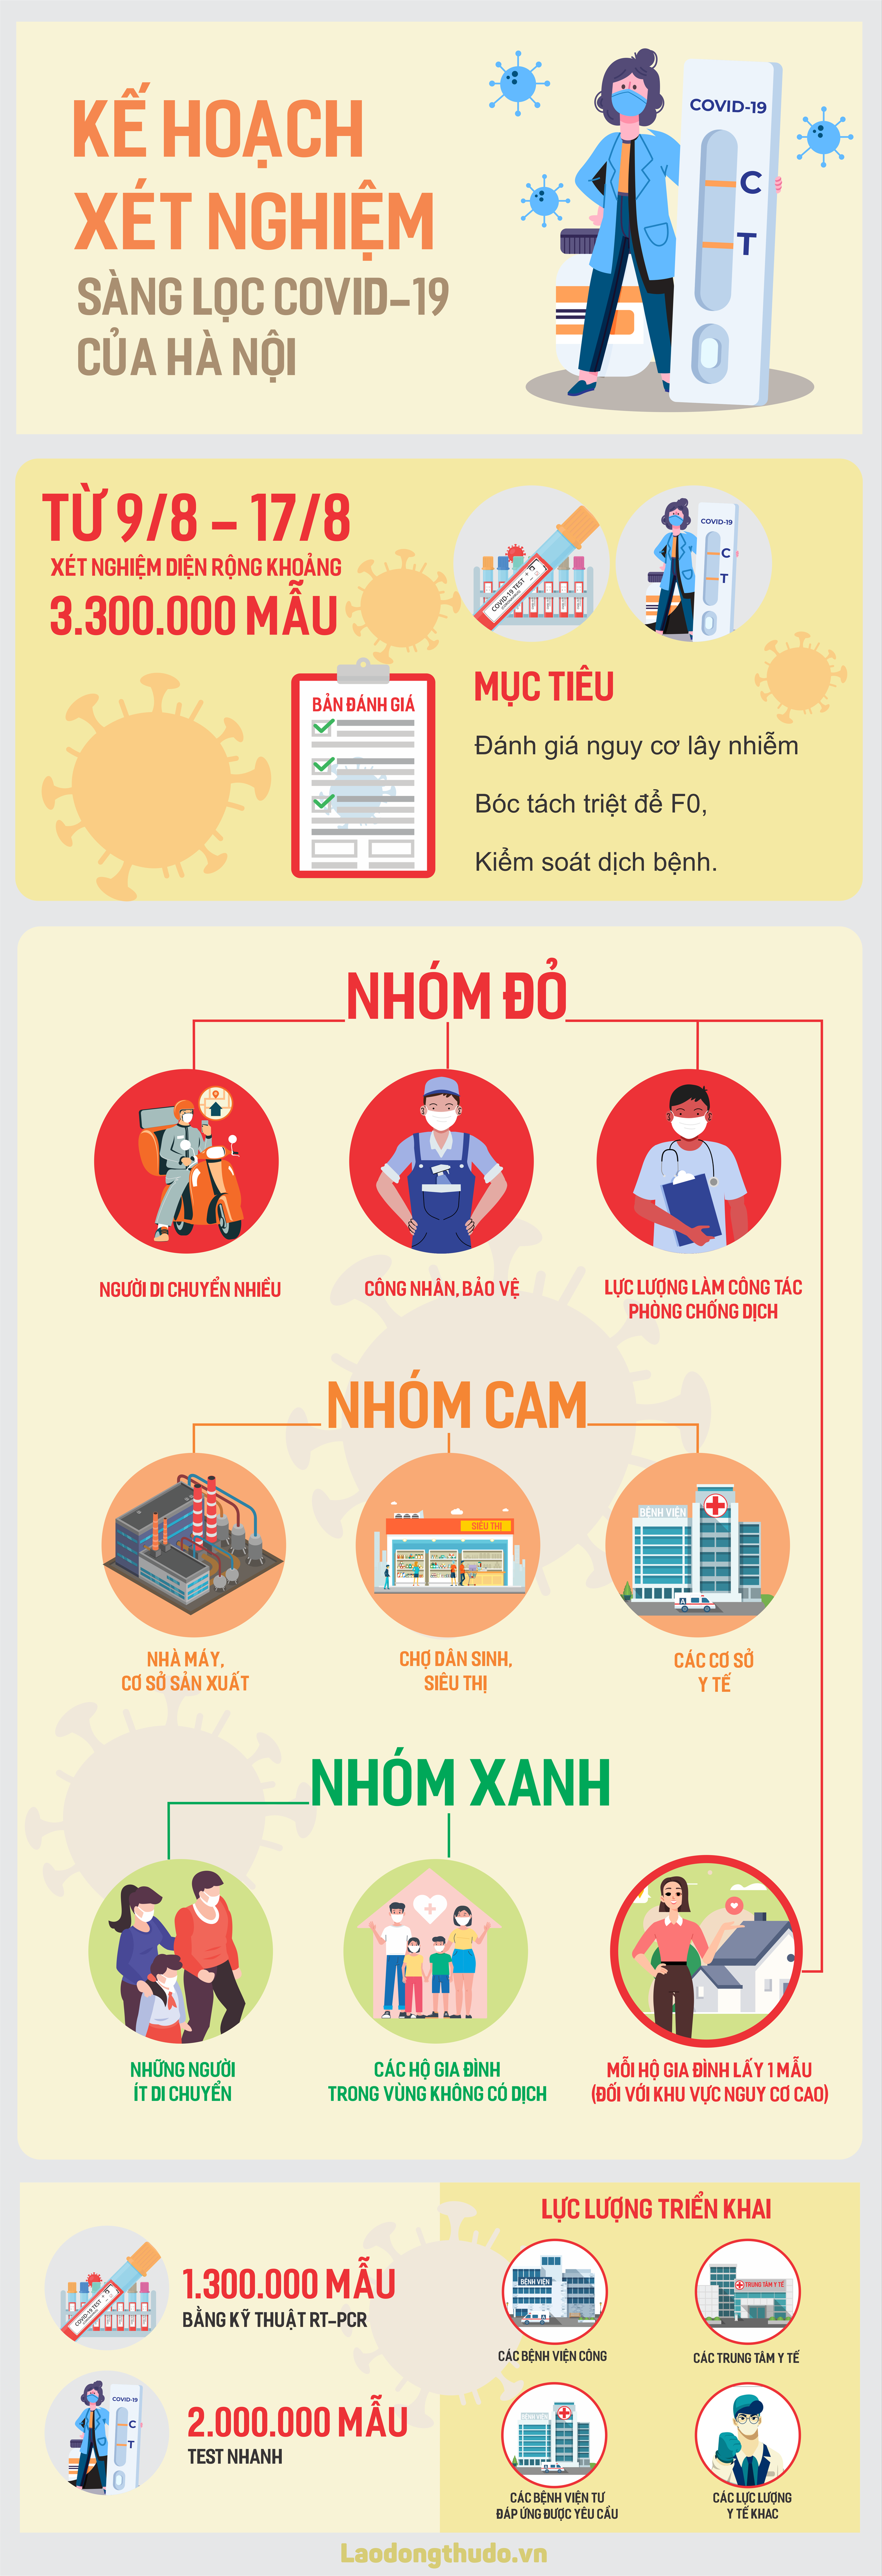 Infographic: Kế hoạch xét nghiệm diện rộng để phòng, chống Covid-19 của Hà Nội